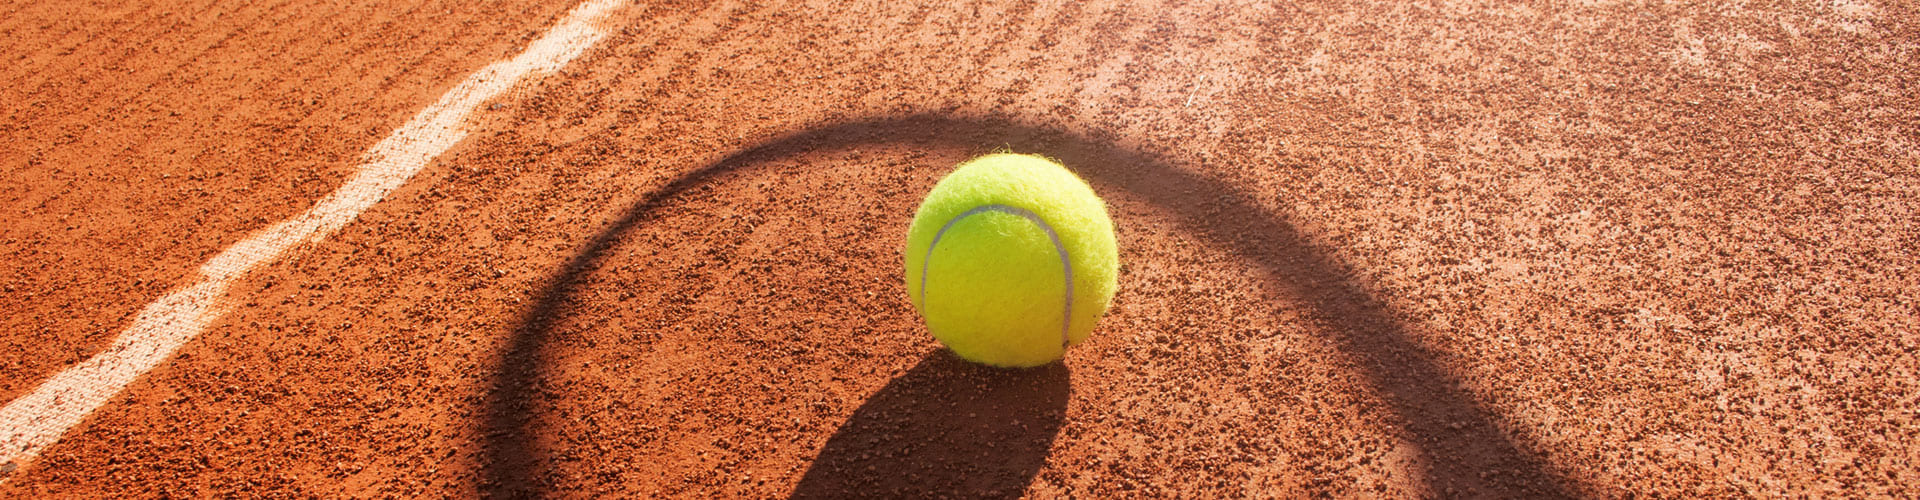 Hvorfor er HIIT en bra treningsmetode for en tennisspiller